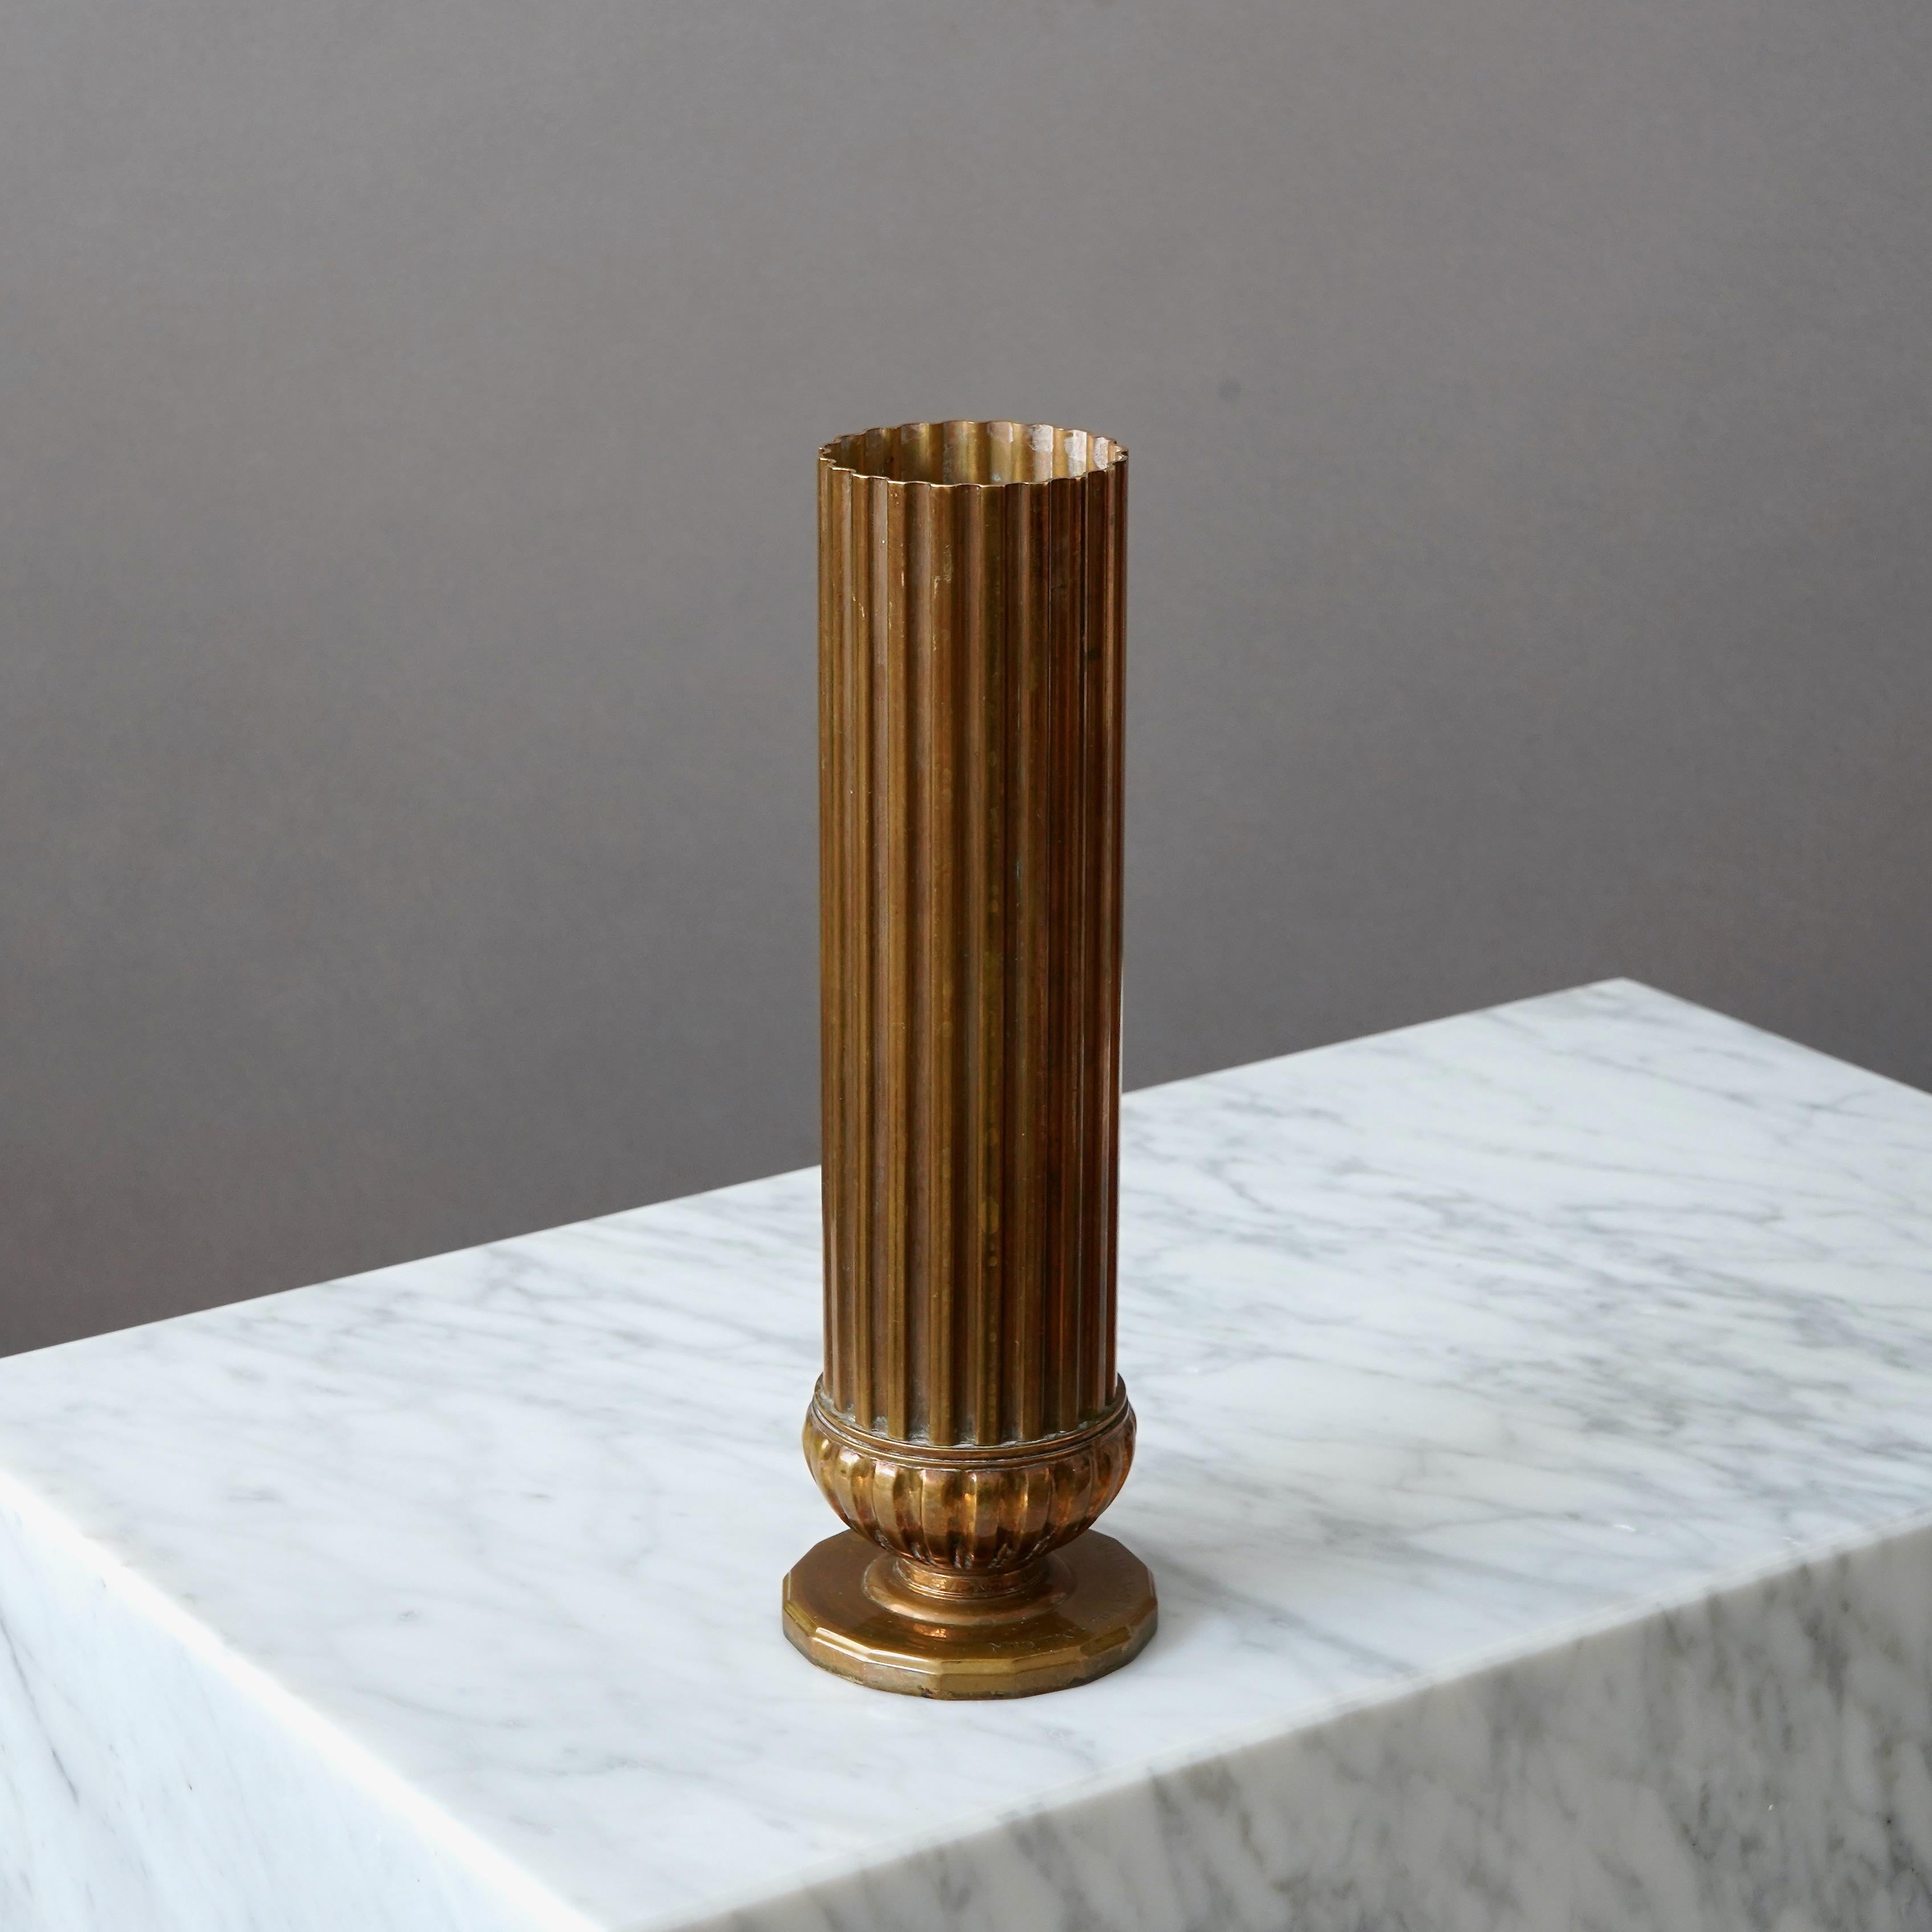 Un magnifique vase art déco en bronze avec une patine étonnante. 
Fabriqué par SVM, Svenska Metallverken AB, Suède, années 1930.  

Très bon état, mais avec une inscription sur la base.
Estampillé 